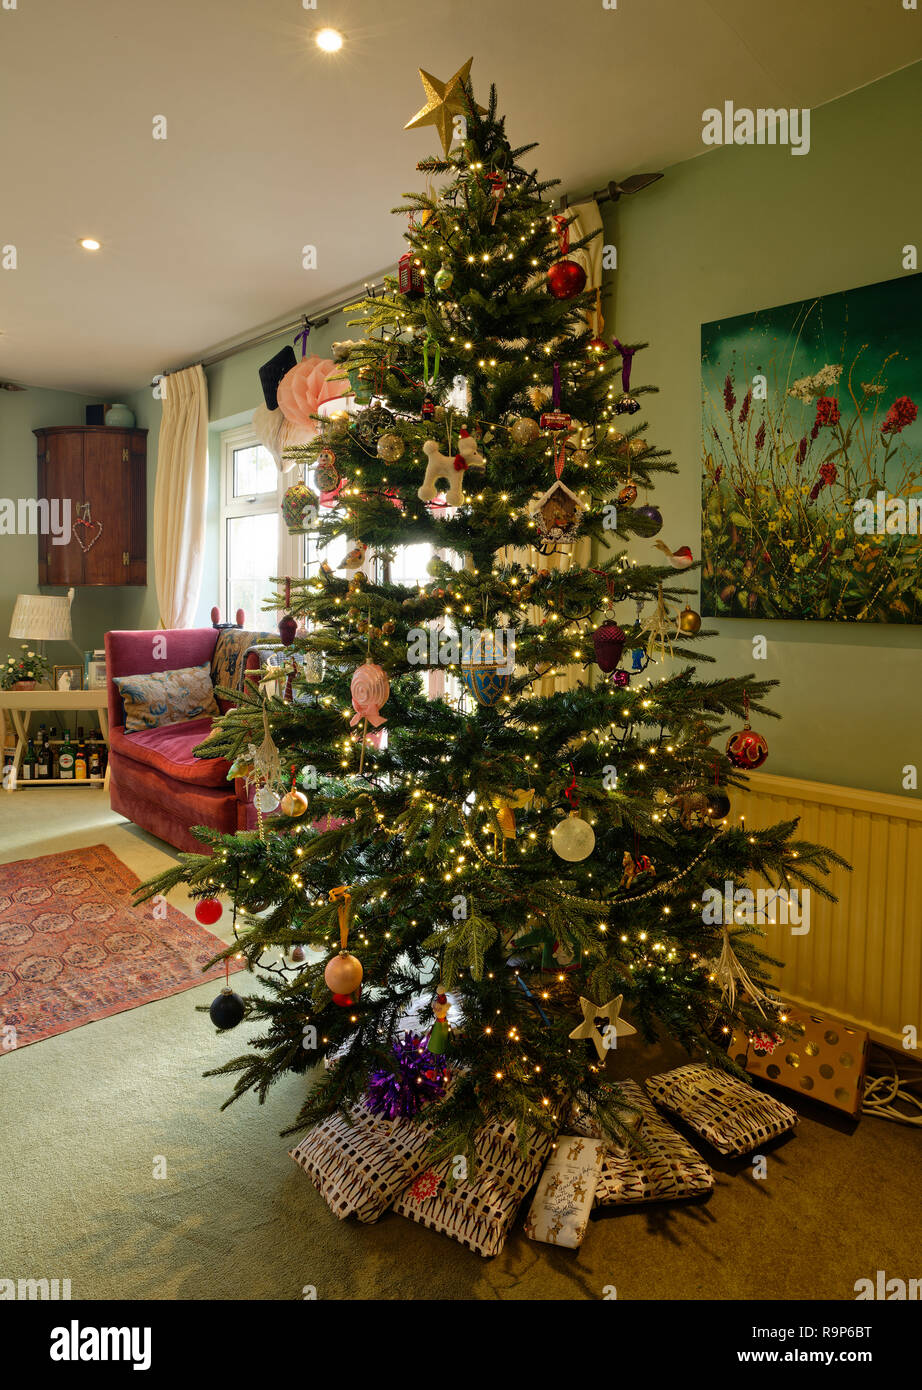 L'arbre de Noël décoré et éclairé dans une maison. Présente en dessous. Banque D'Images